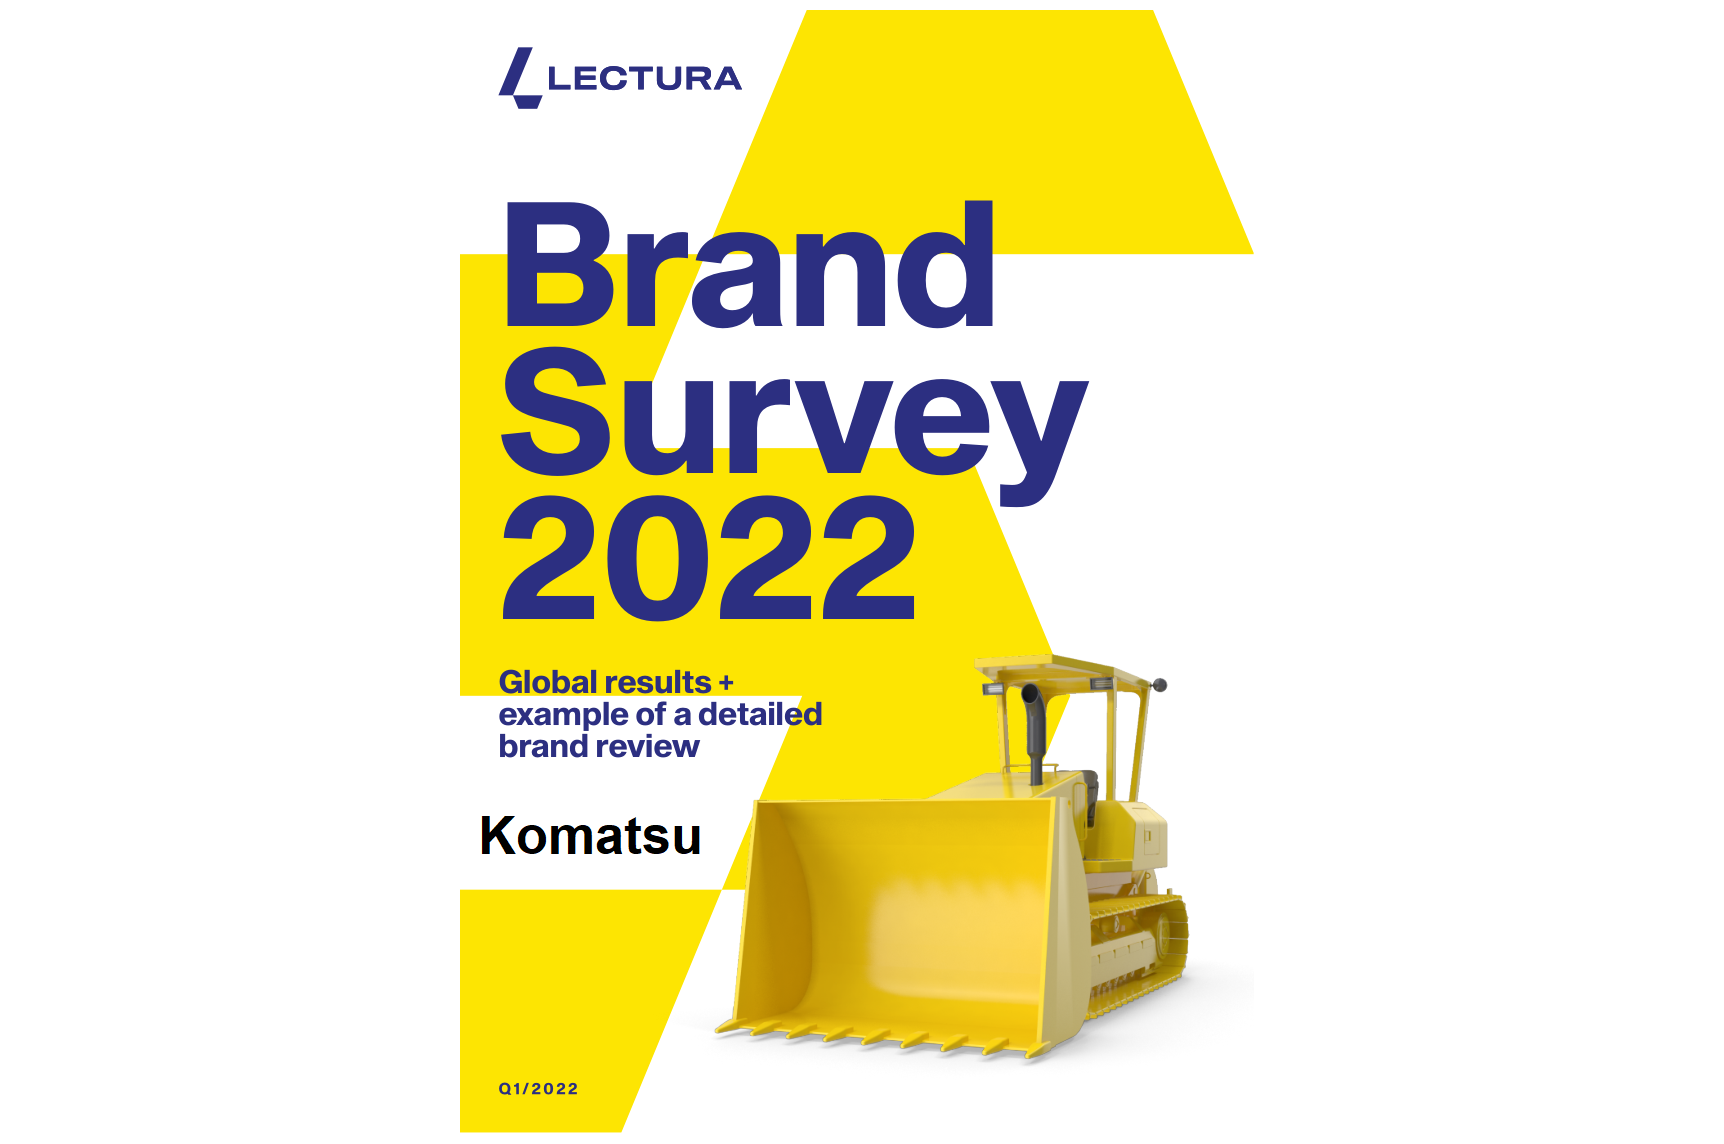 BrandSurvey 2022 Sneak Peak: Komatsu